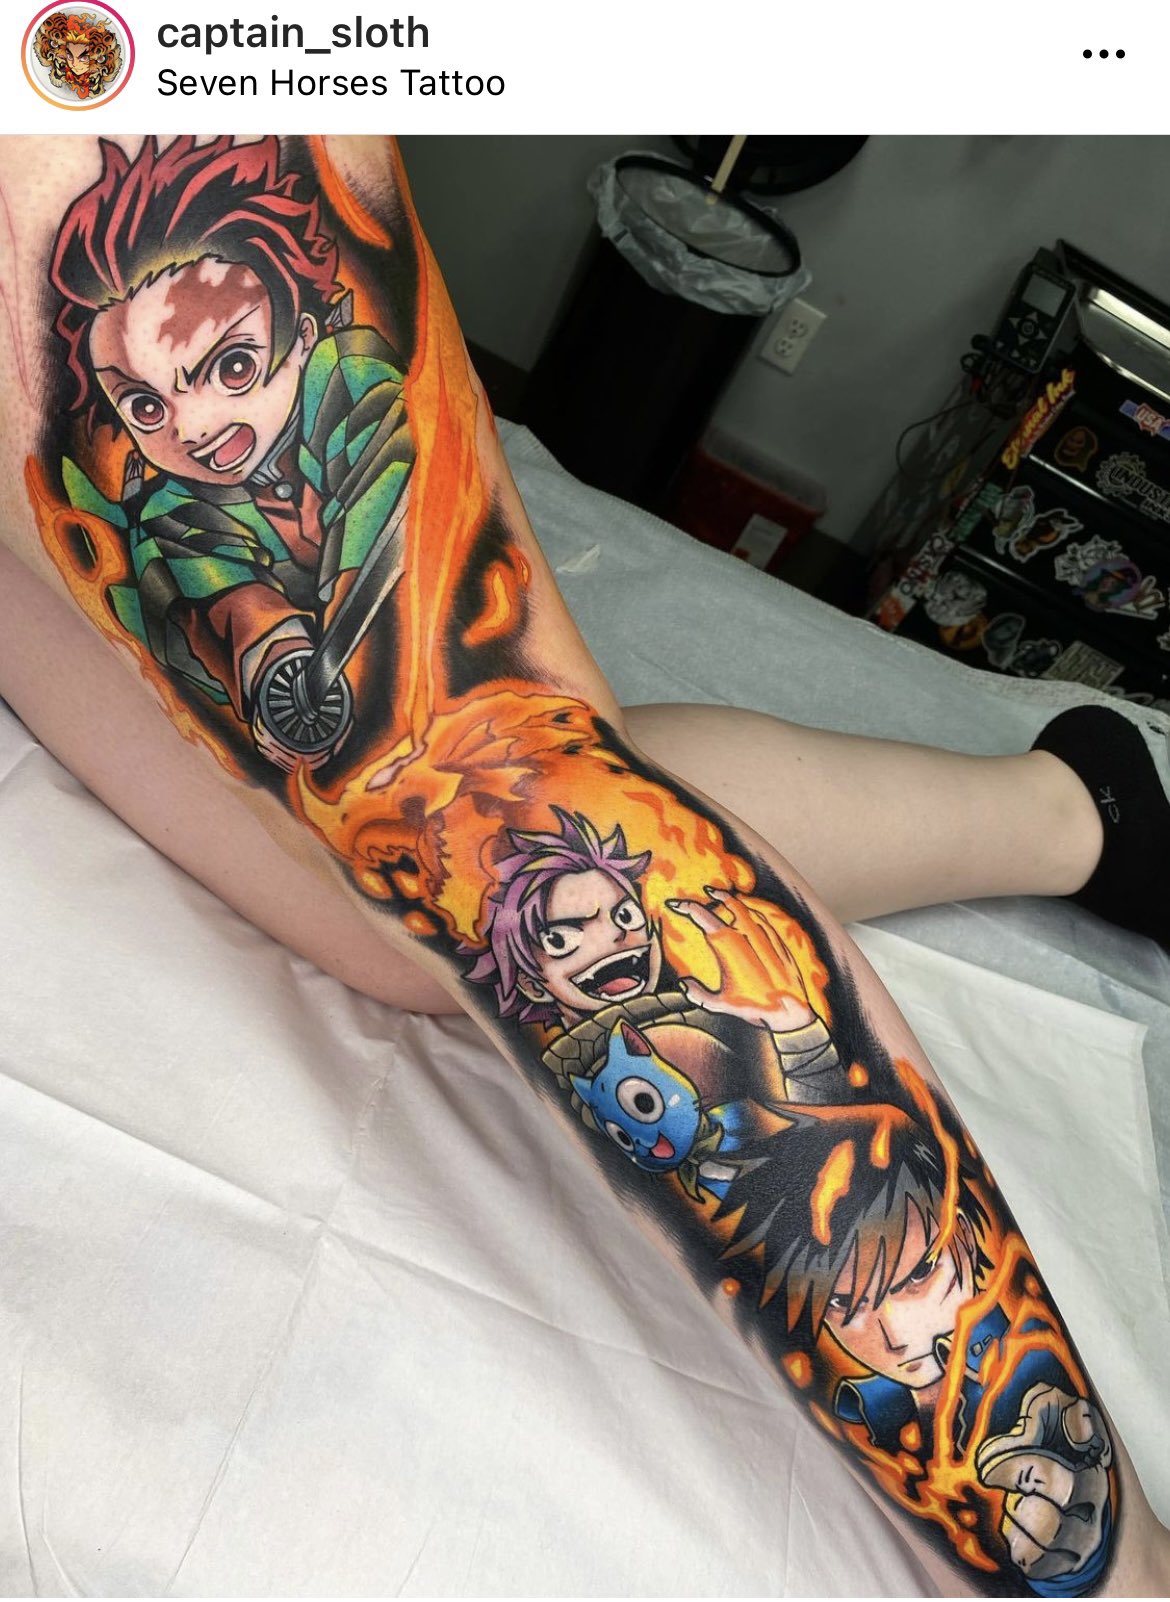 Txttooing  Anime tattoo sleeve in progress mushuttt   Facebook